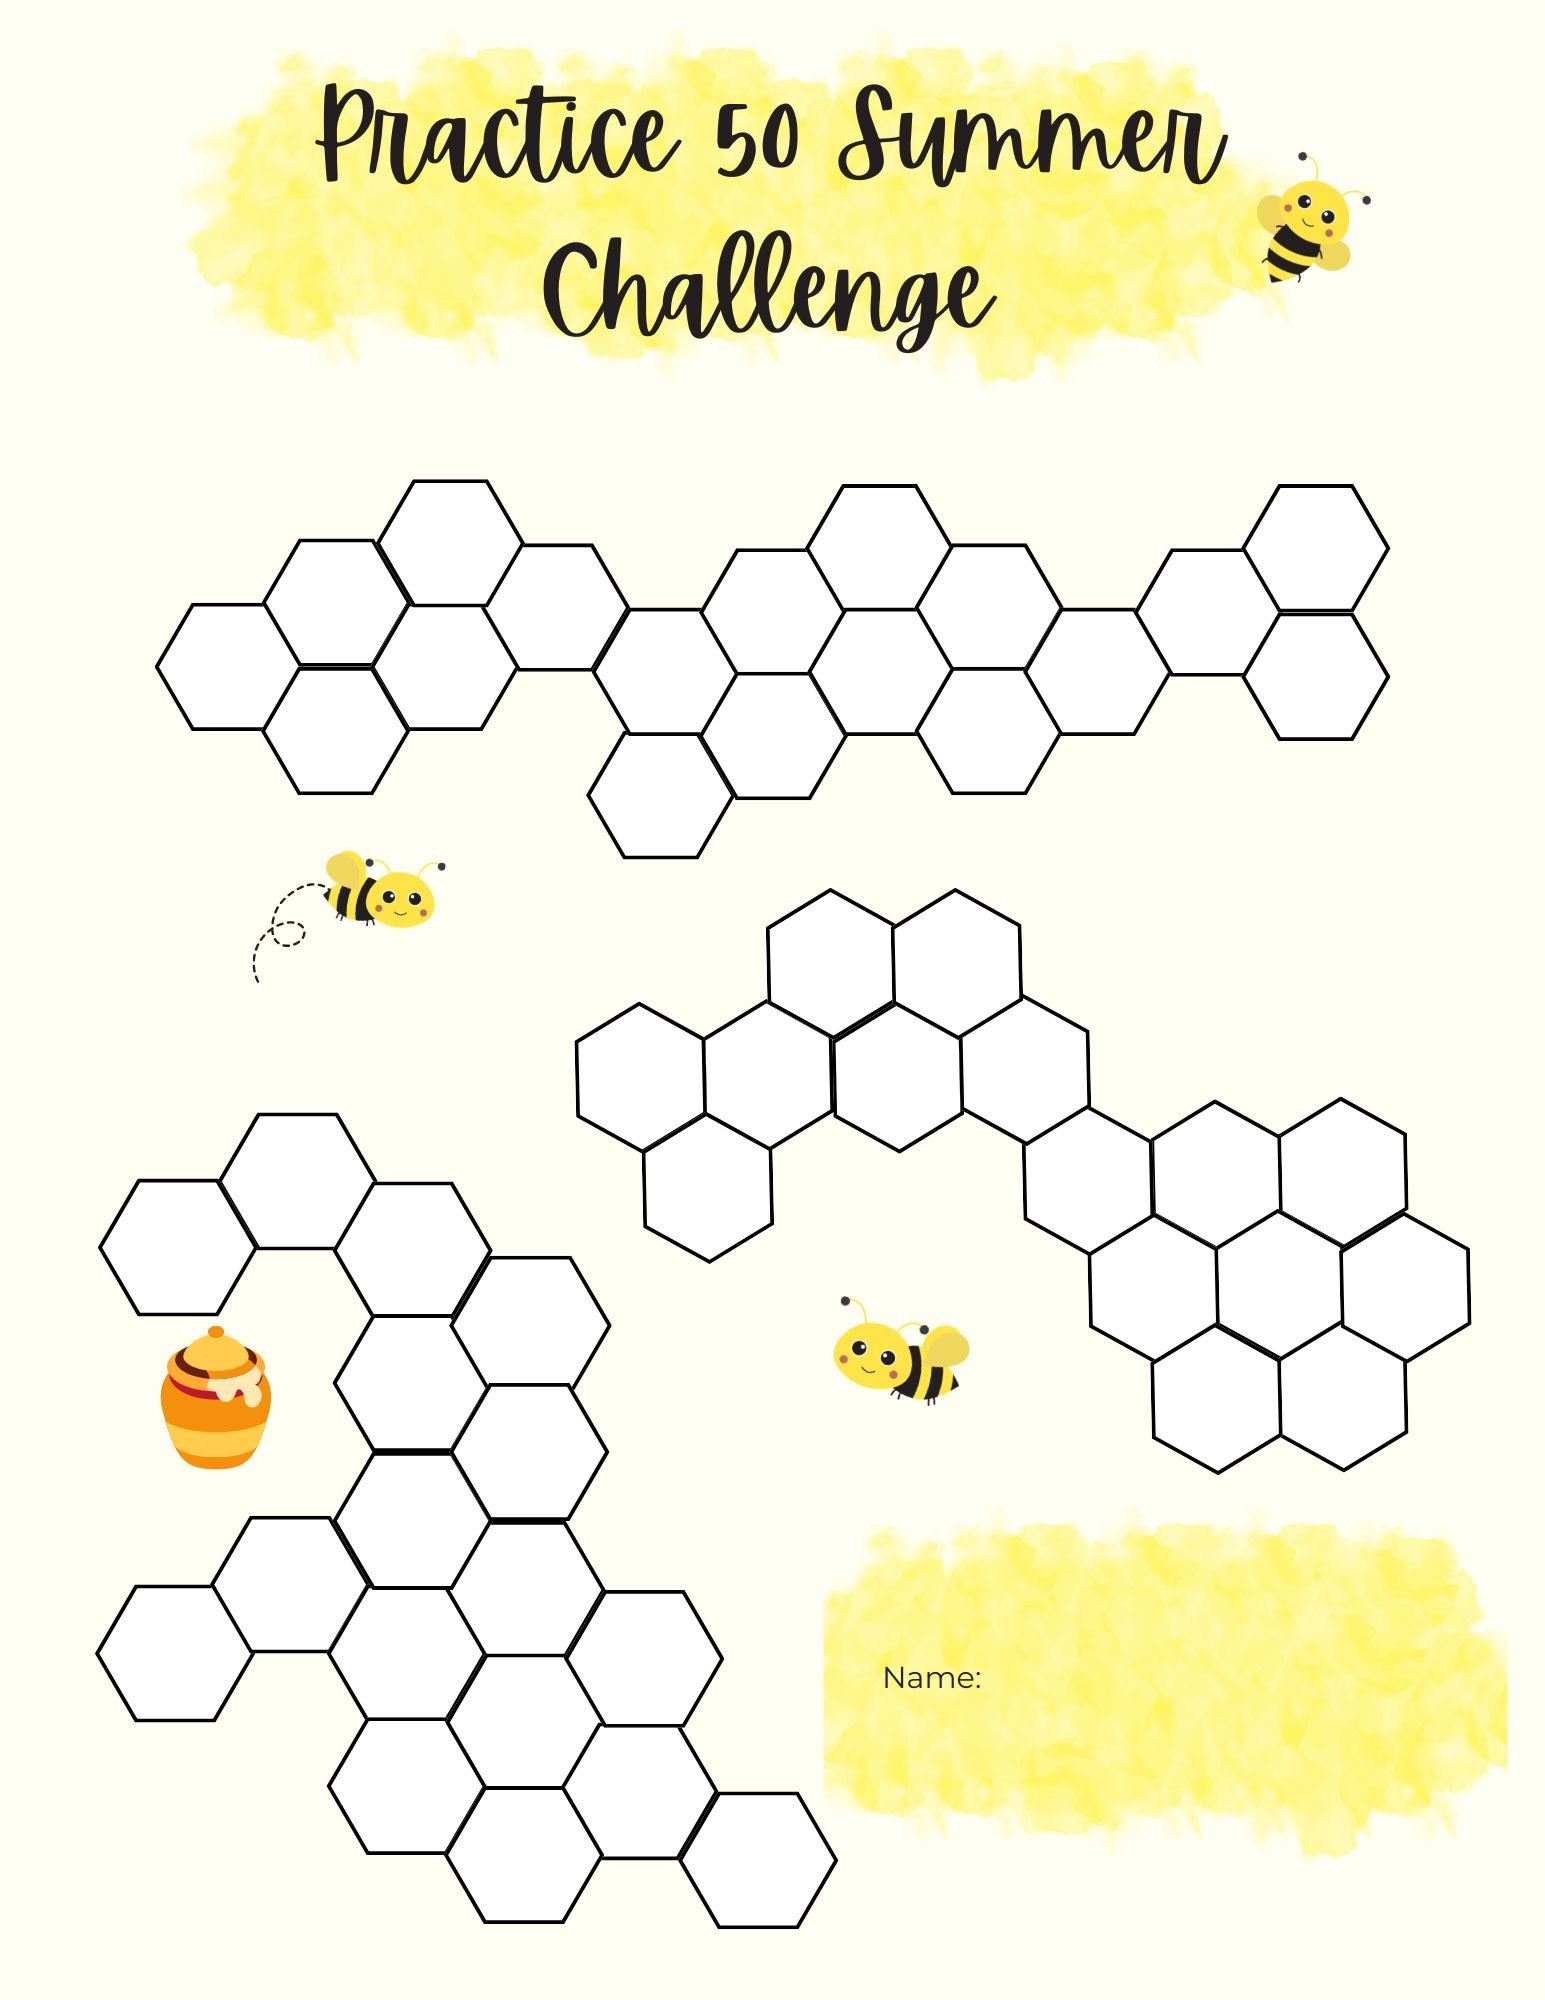 Honeybee Practice 50 Challenge.jpg